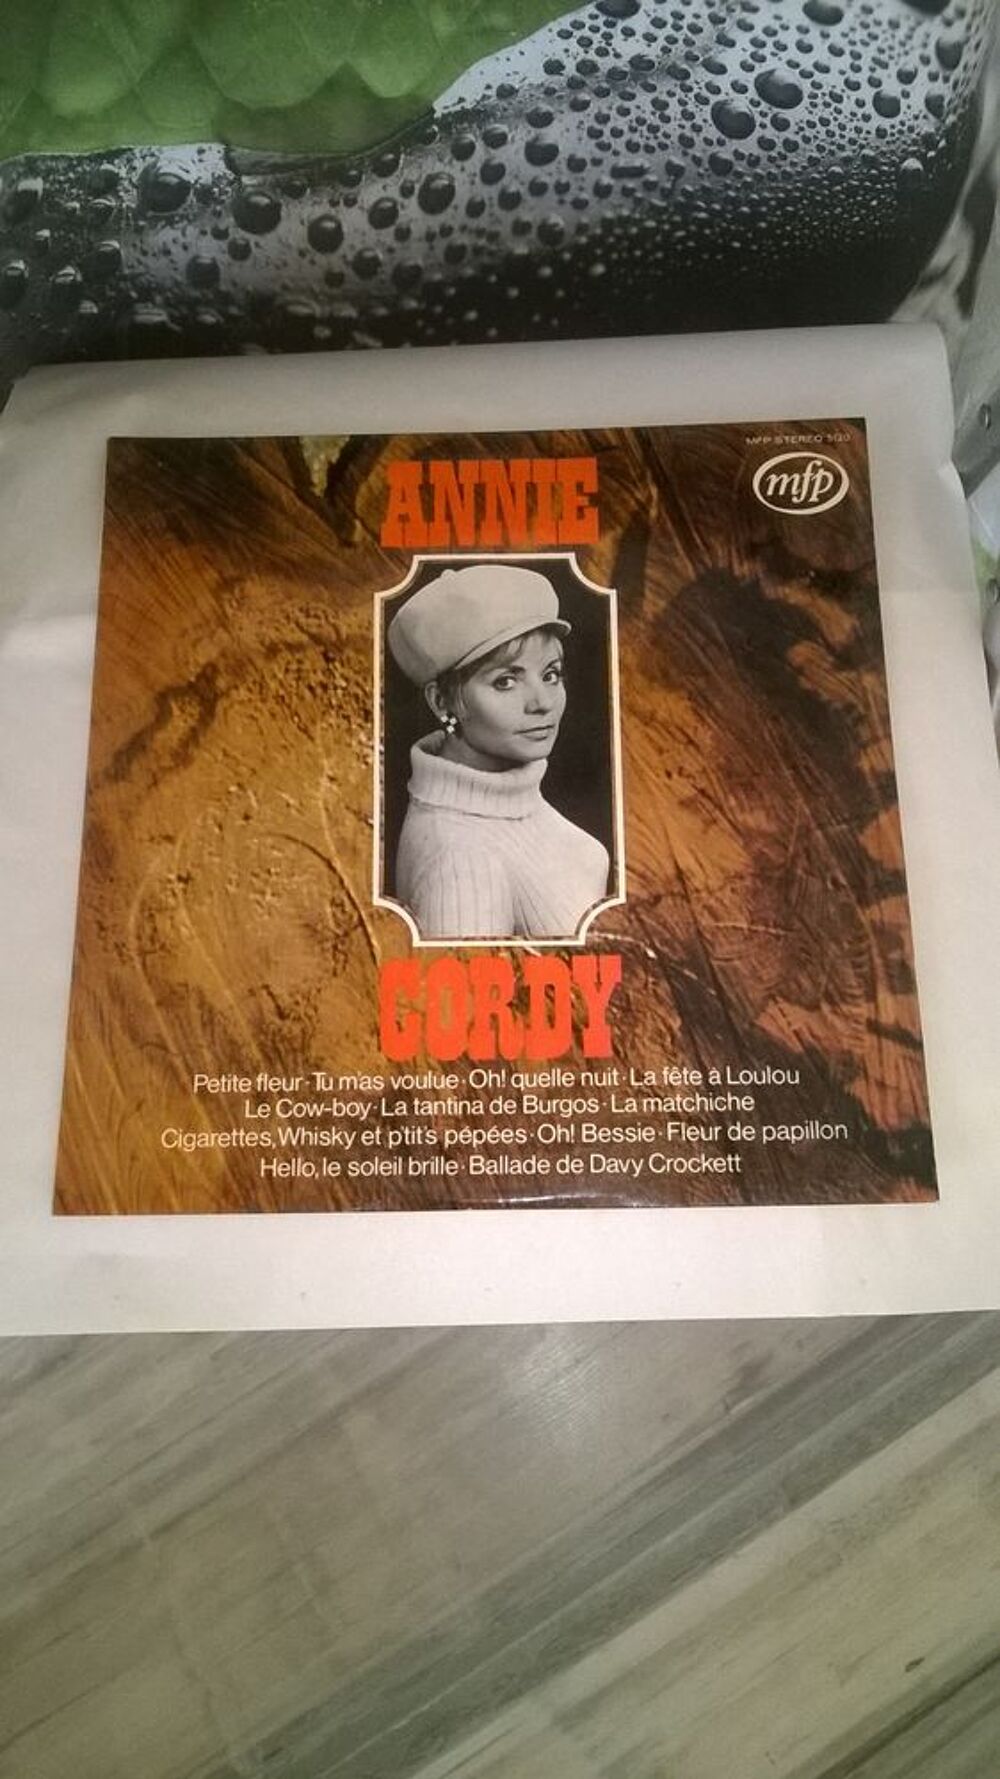 Vinyle Annie cordy
Excellent etat
Fleur de papillon
Oh Bes CD et vinyles